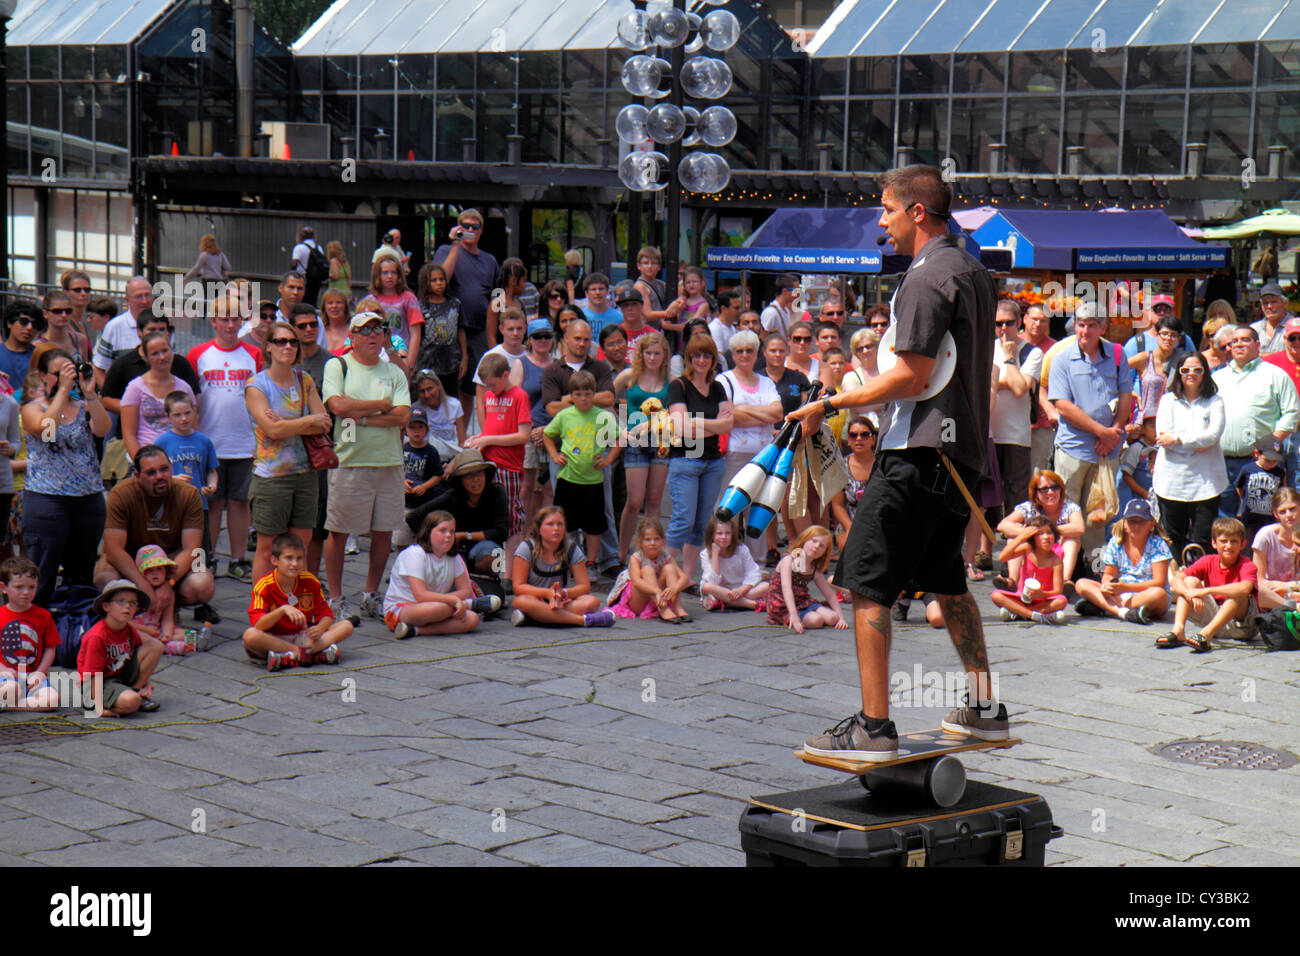 Boston Massachusetts, Faneiul Hall Marketplace, Außenansicht, Straßenkünstler, Tipps zum Bucking, Publikum, Mann Männer Erwachsene Erwachsene, Balancing, MA120822056 Stockfoto